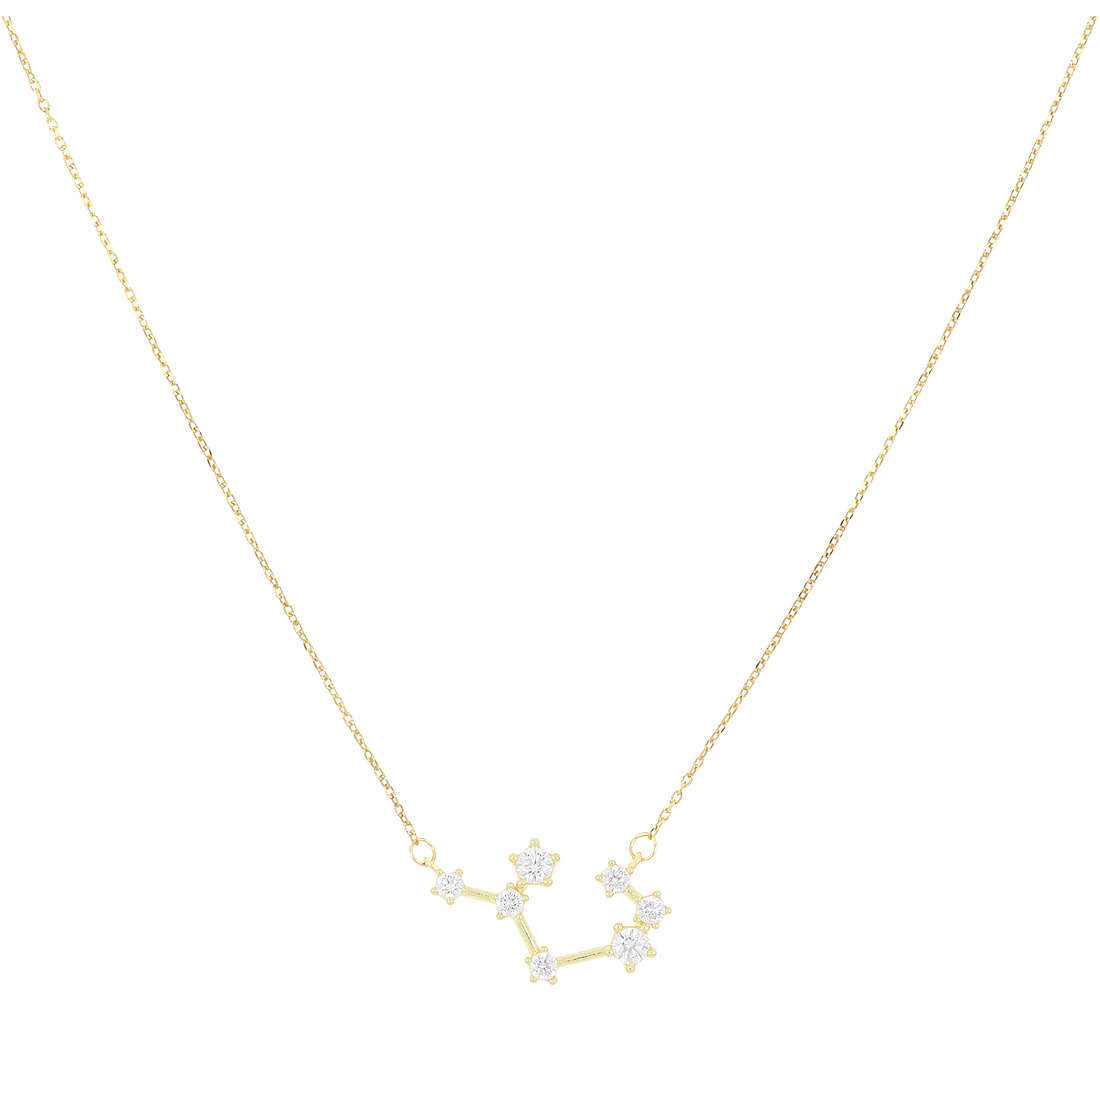 necklace woman zodiac sign Sagittarius GioiaPura jewel Zodiaco GYXCAZ0019-SAG